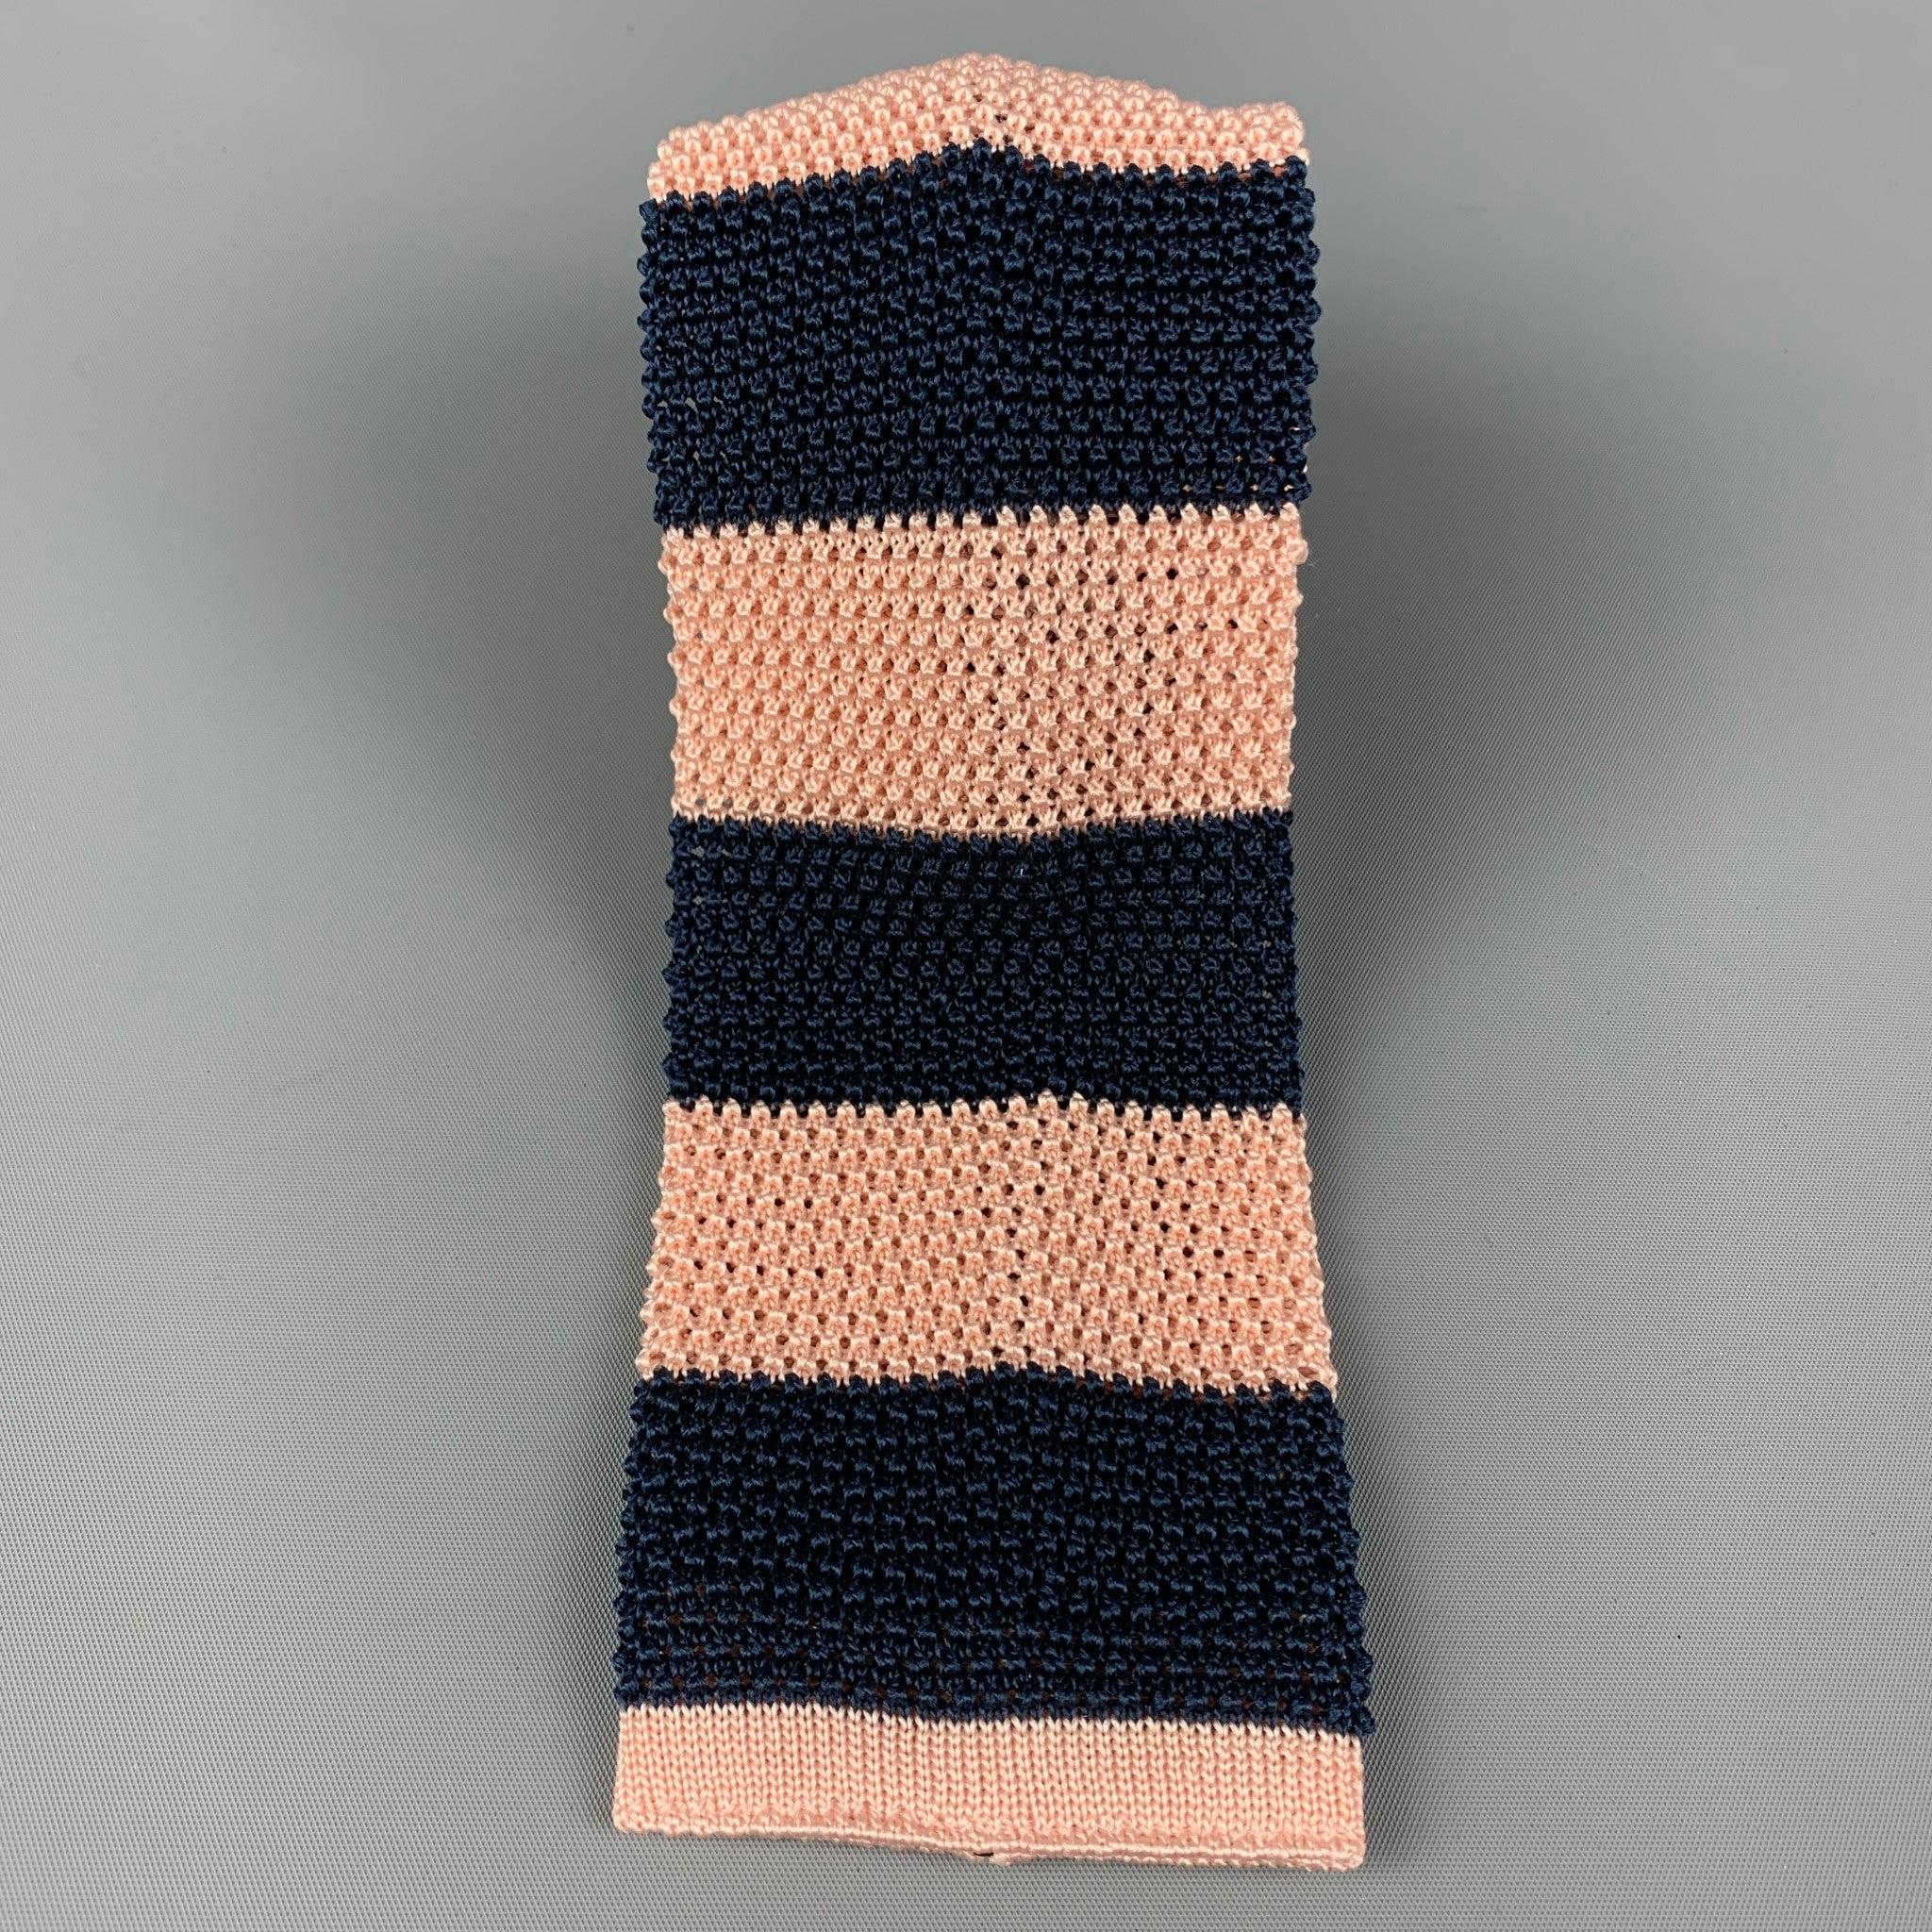 PAUL SMITH
Krawatte aus marineblauem und rosafarbenem gestricktem Seidenköper mit allseitigem Streifendruck. Hergestellt in Italien. Sehr guter gebrauchter Zustand. 

Abmessungen: 
  Breite: 3 Zoll Länge: 62 Zoll 
  
  
 
Referenz: 80262
Kategorie: